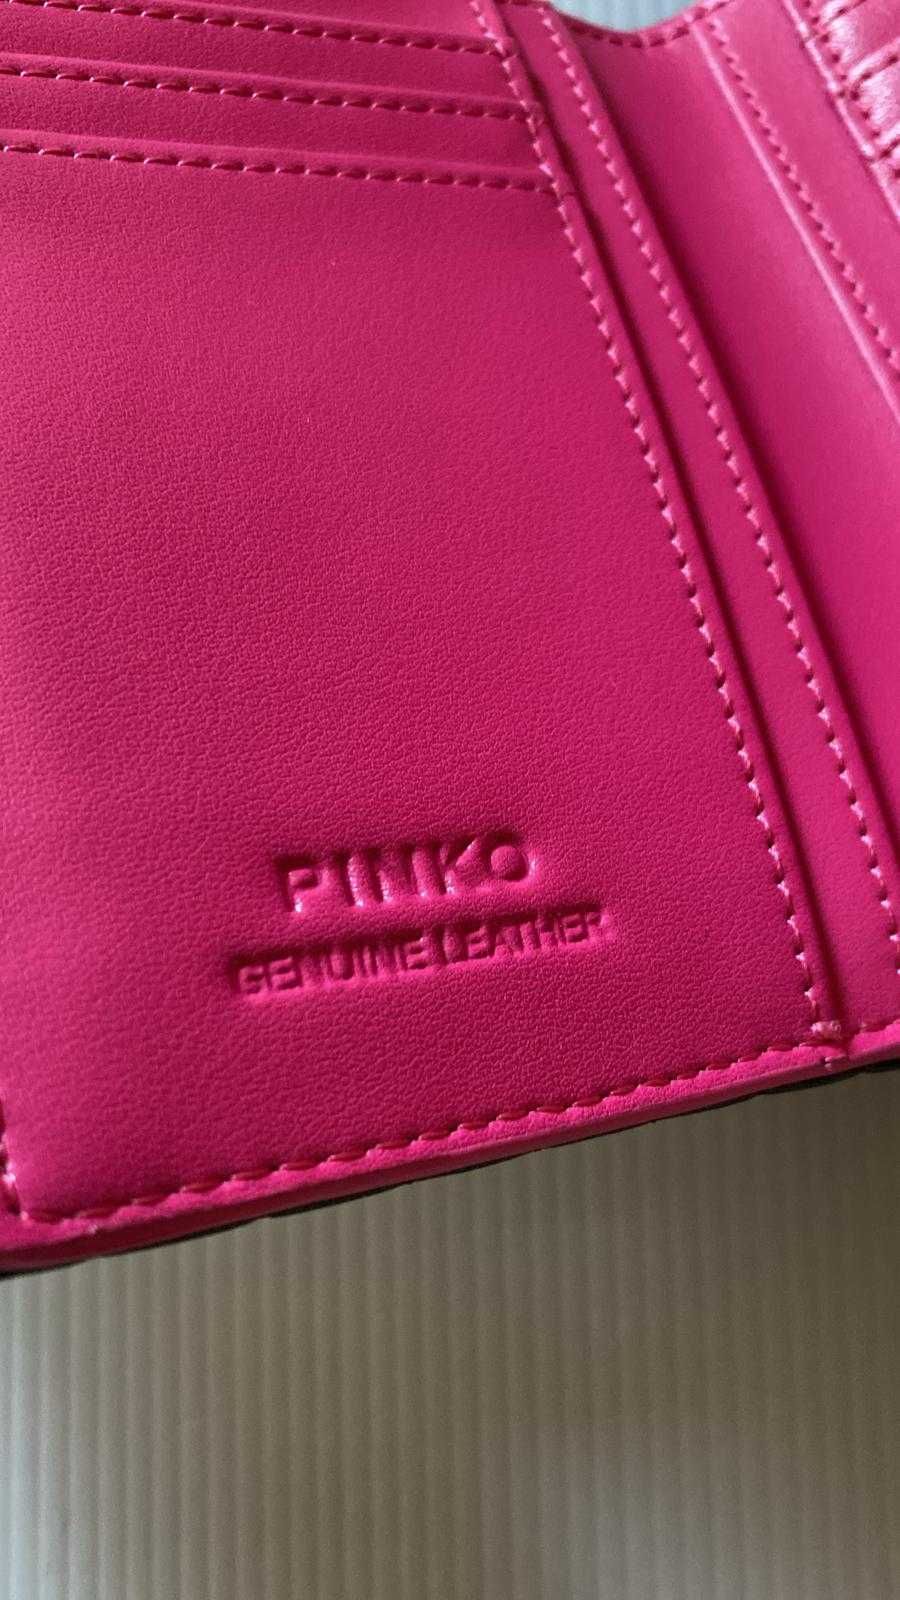 Portfel Pinko Compact Wallet czarny z różowym środkiem